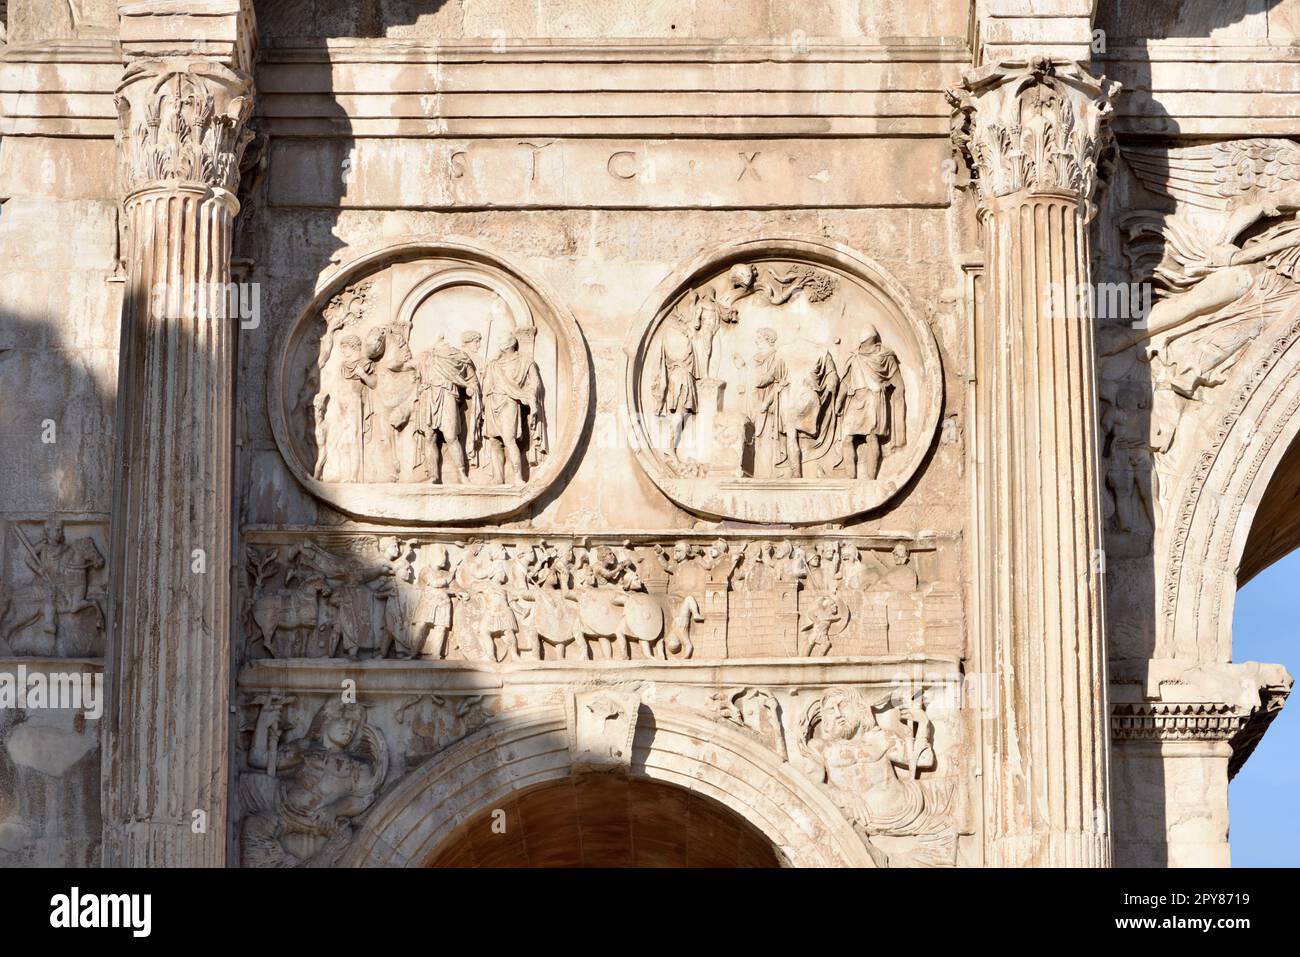 Italia, Roma, arco di Costantino, bassorilievo Foto Stock